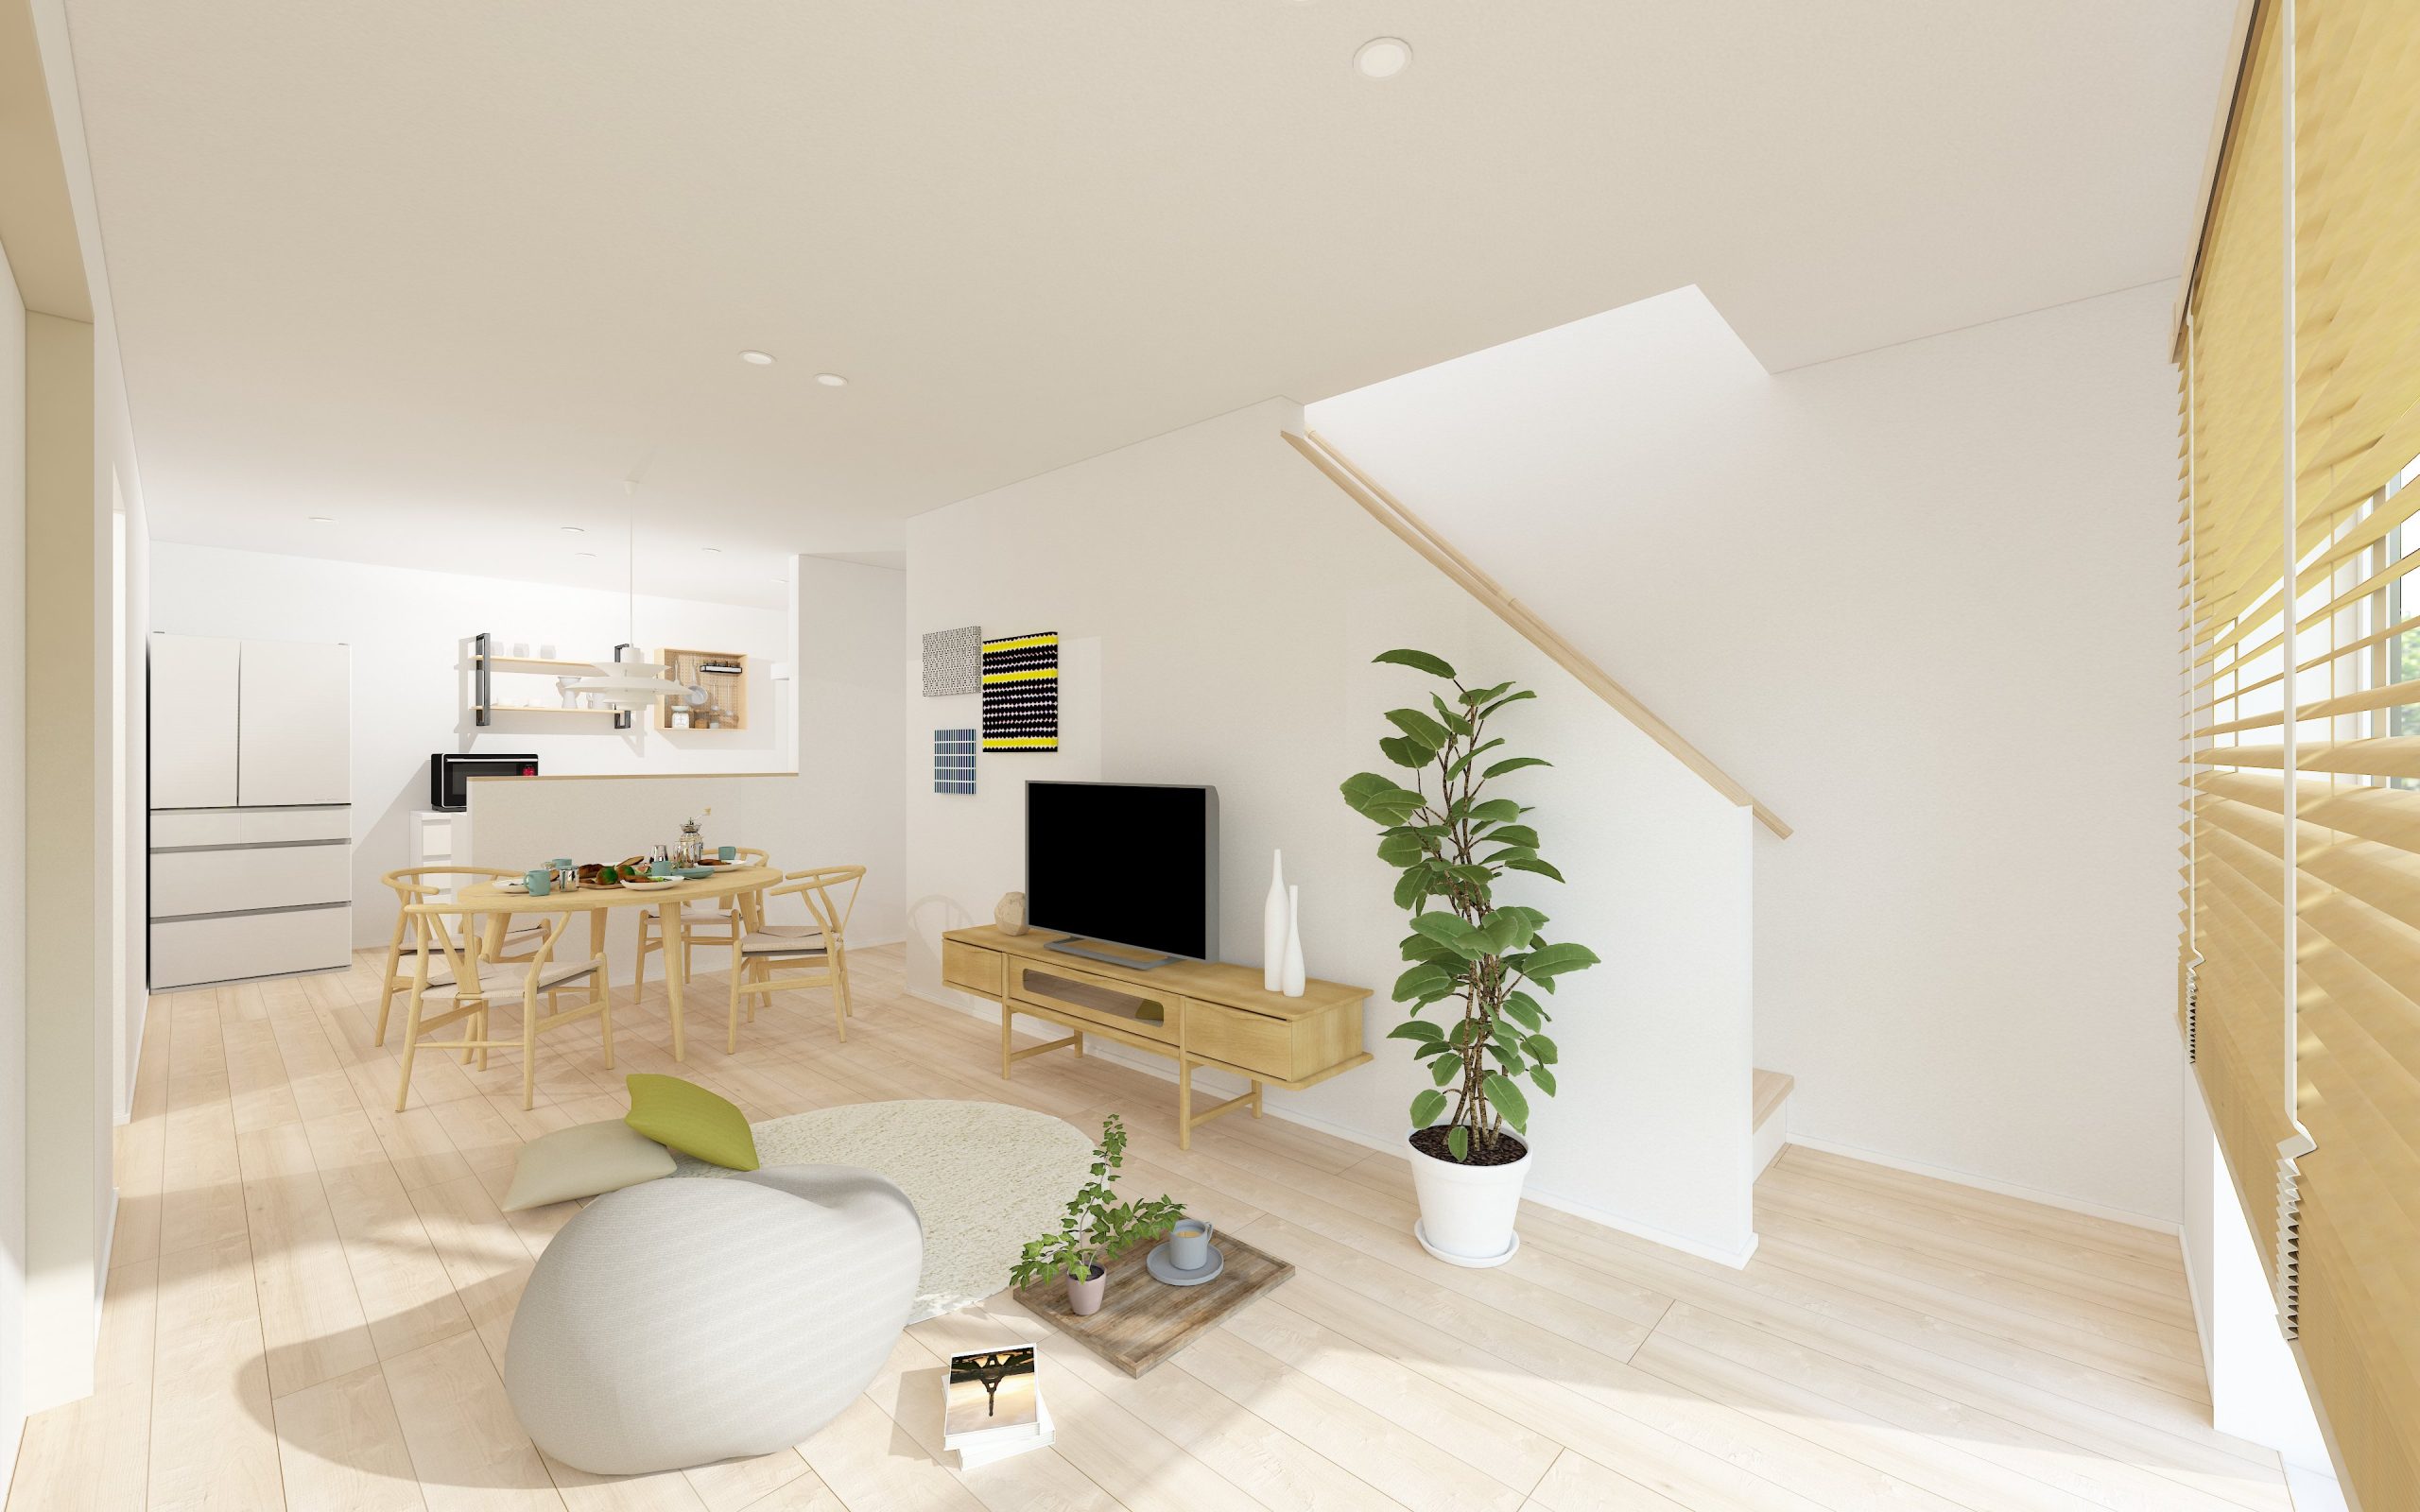 – 12月公開 -上田市中之条 住宅性能体験型モデルハウス